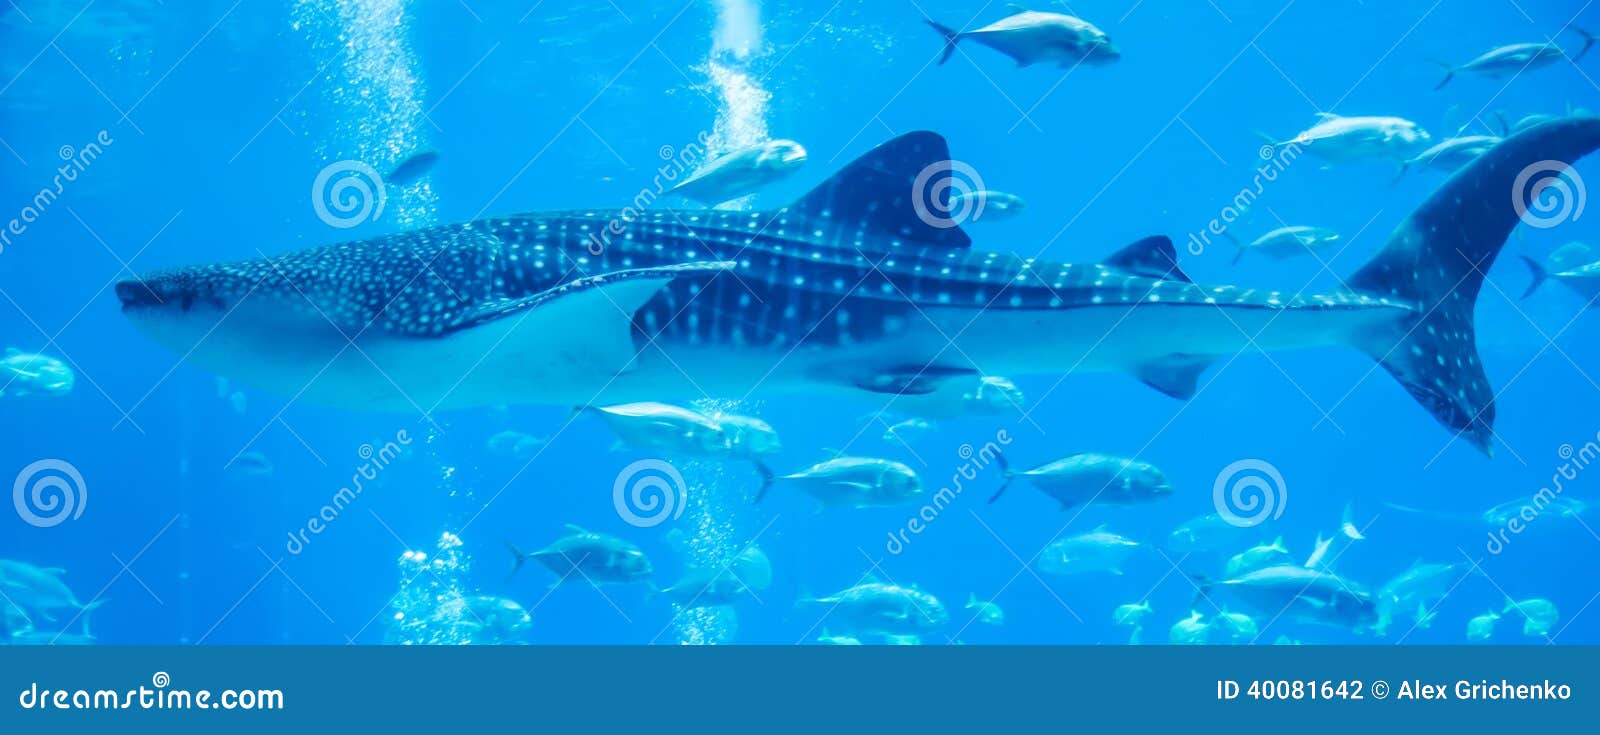 Walhaie, die im Aquarium schwimmen. Walhaie, die im Aquarium mit dem Leutebeobachten schwimmen